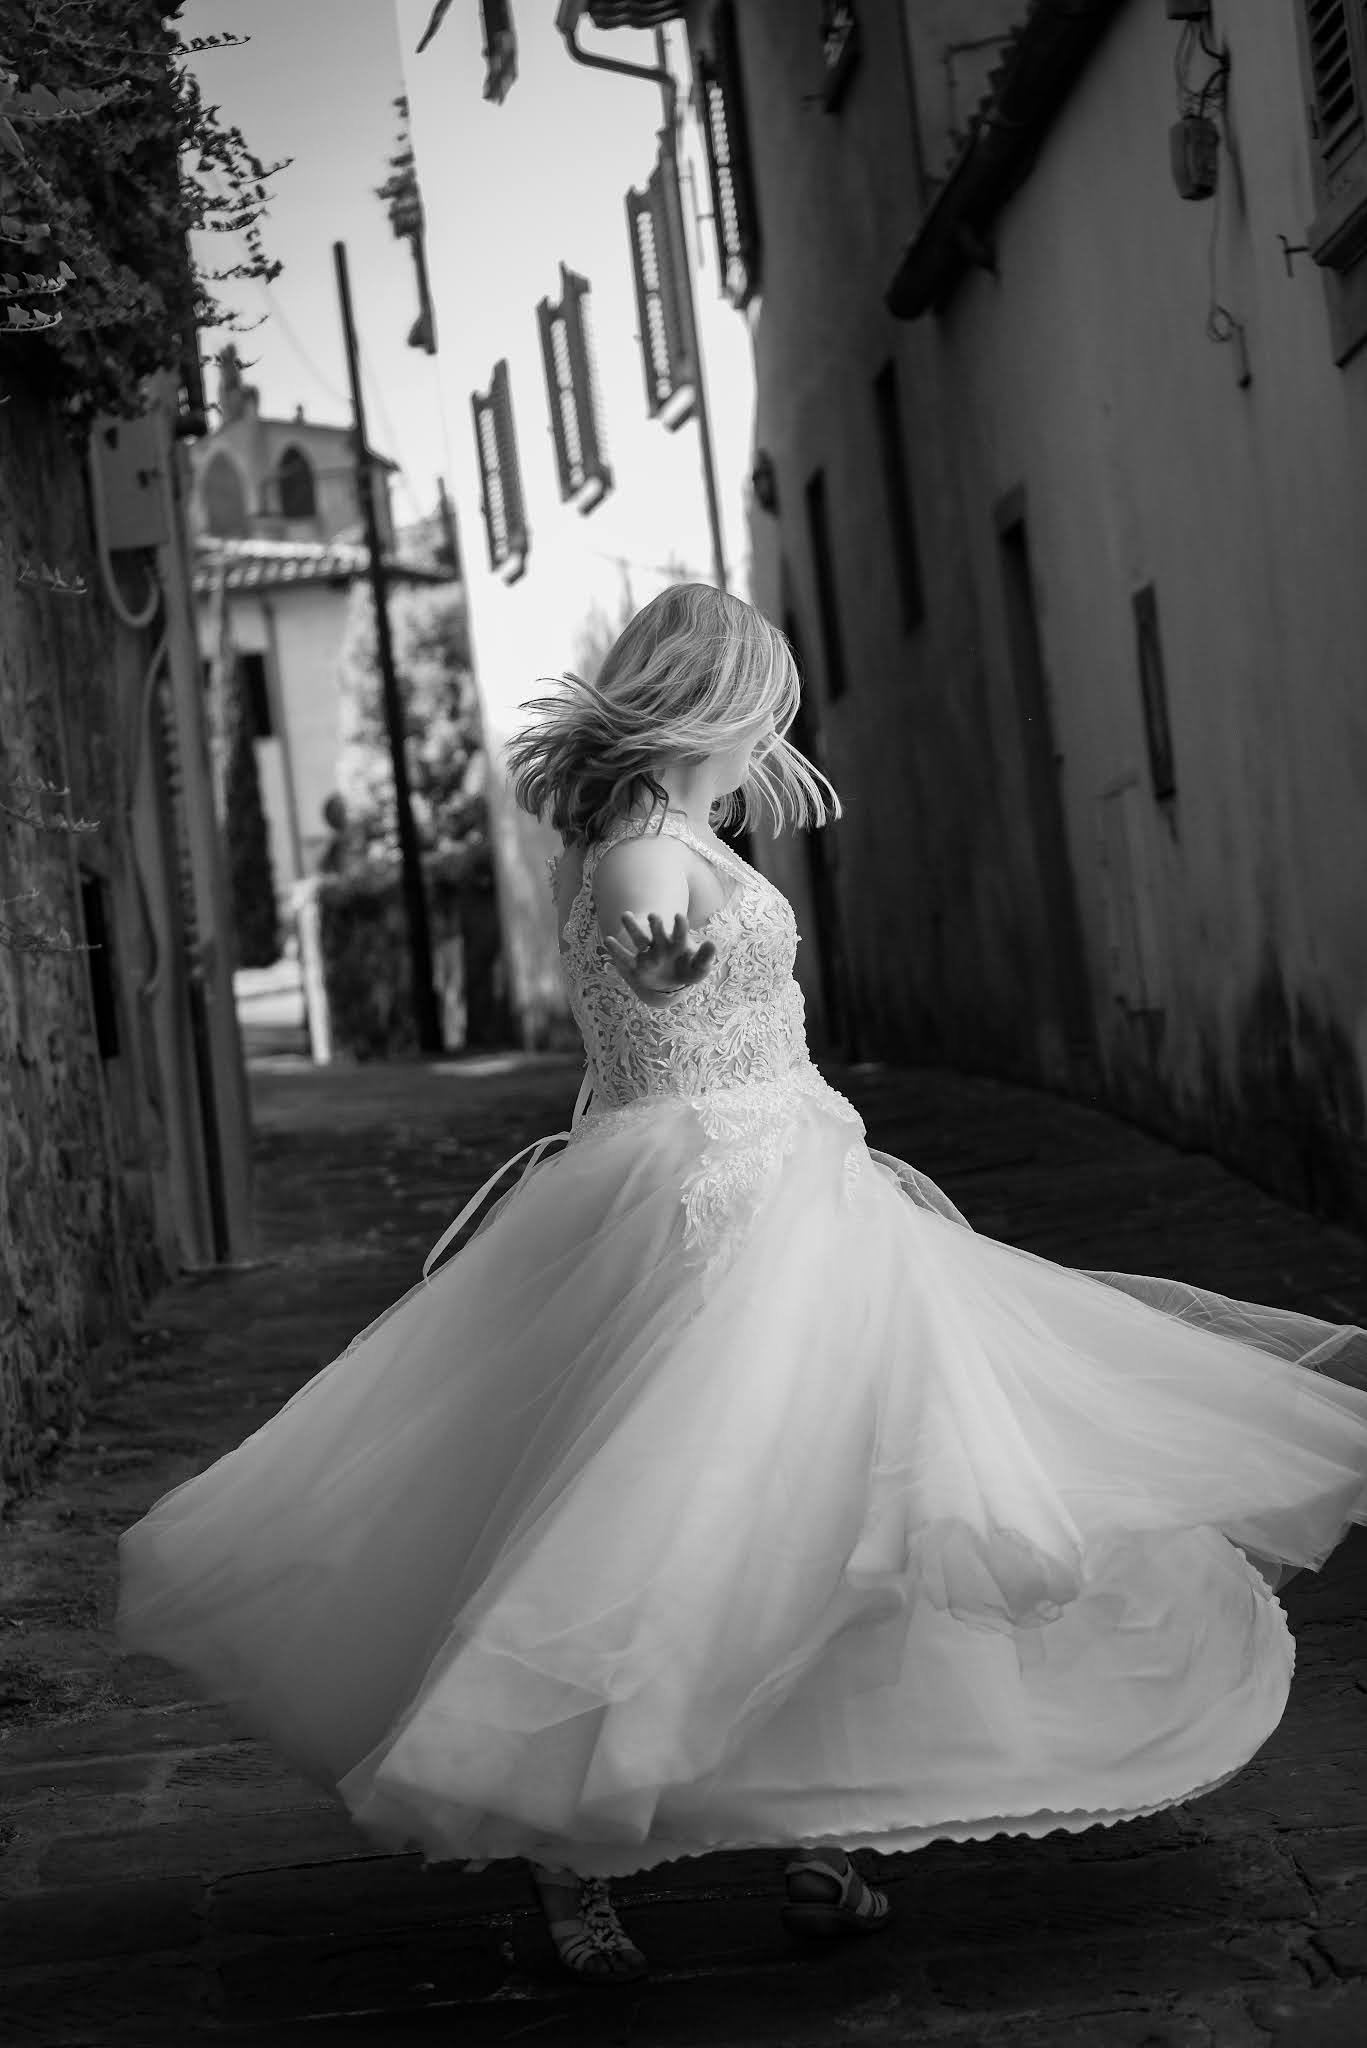 Sesja ślubna we Florencji, fotograf Toskania